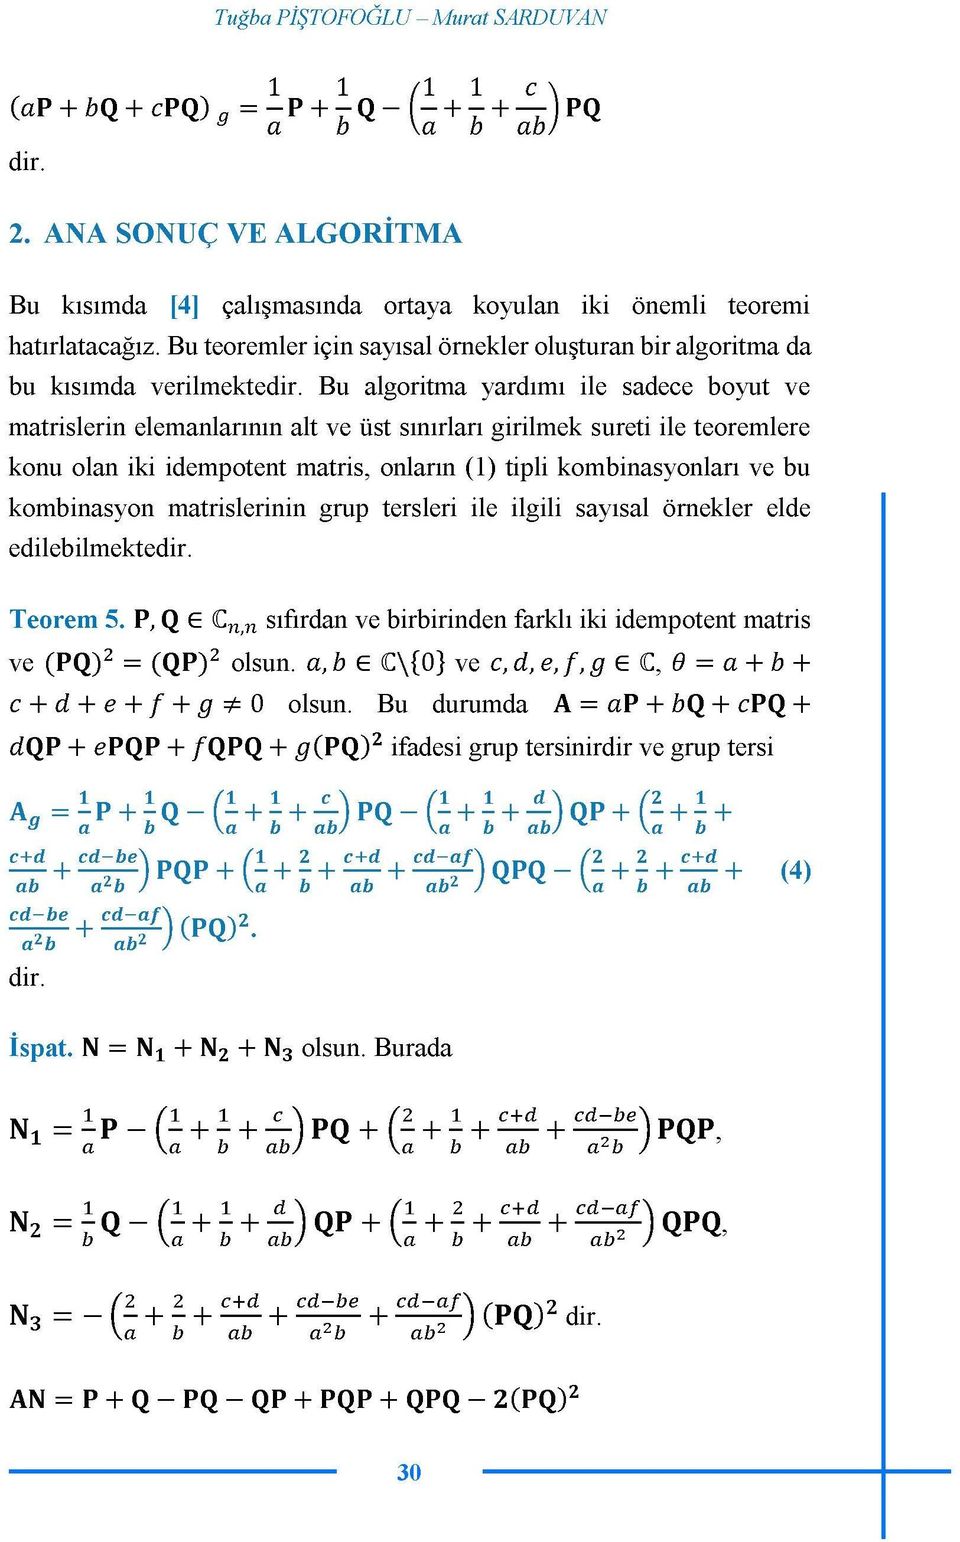 Bu algoritma yardımı ile sadece boyut ve matrislerin elemanlarının alt ve üst sınırları girilmek sureti ile teoremlere konu olan iki idempotent matris, onların (1) tipli kombinasyonları ve bu